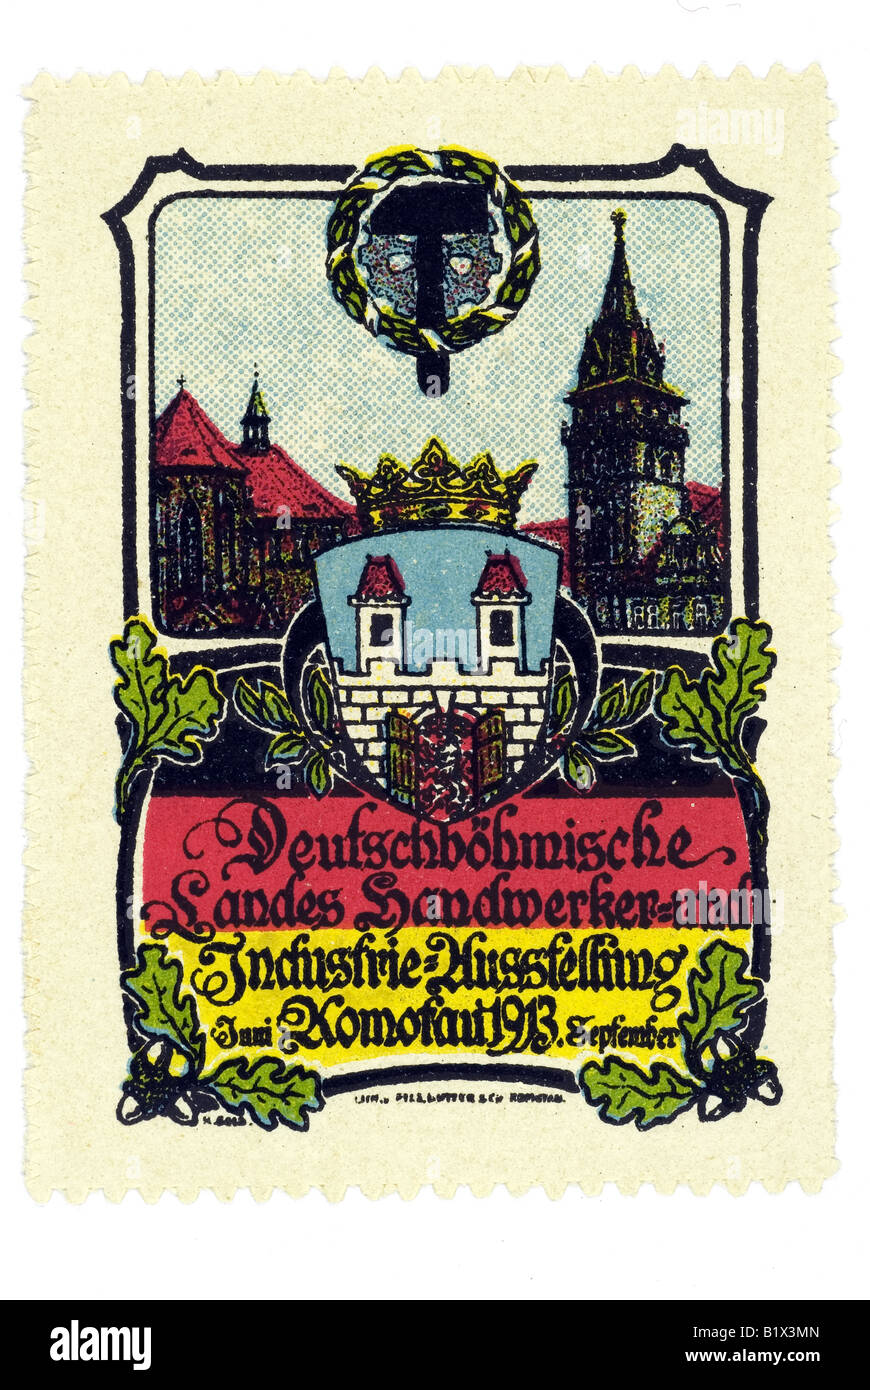 Deutschböhmische Landes Handwerker- und Industrie- Ausstellung, Juni Komofau 1913 September Stock Photo